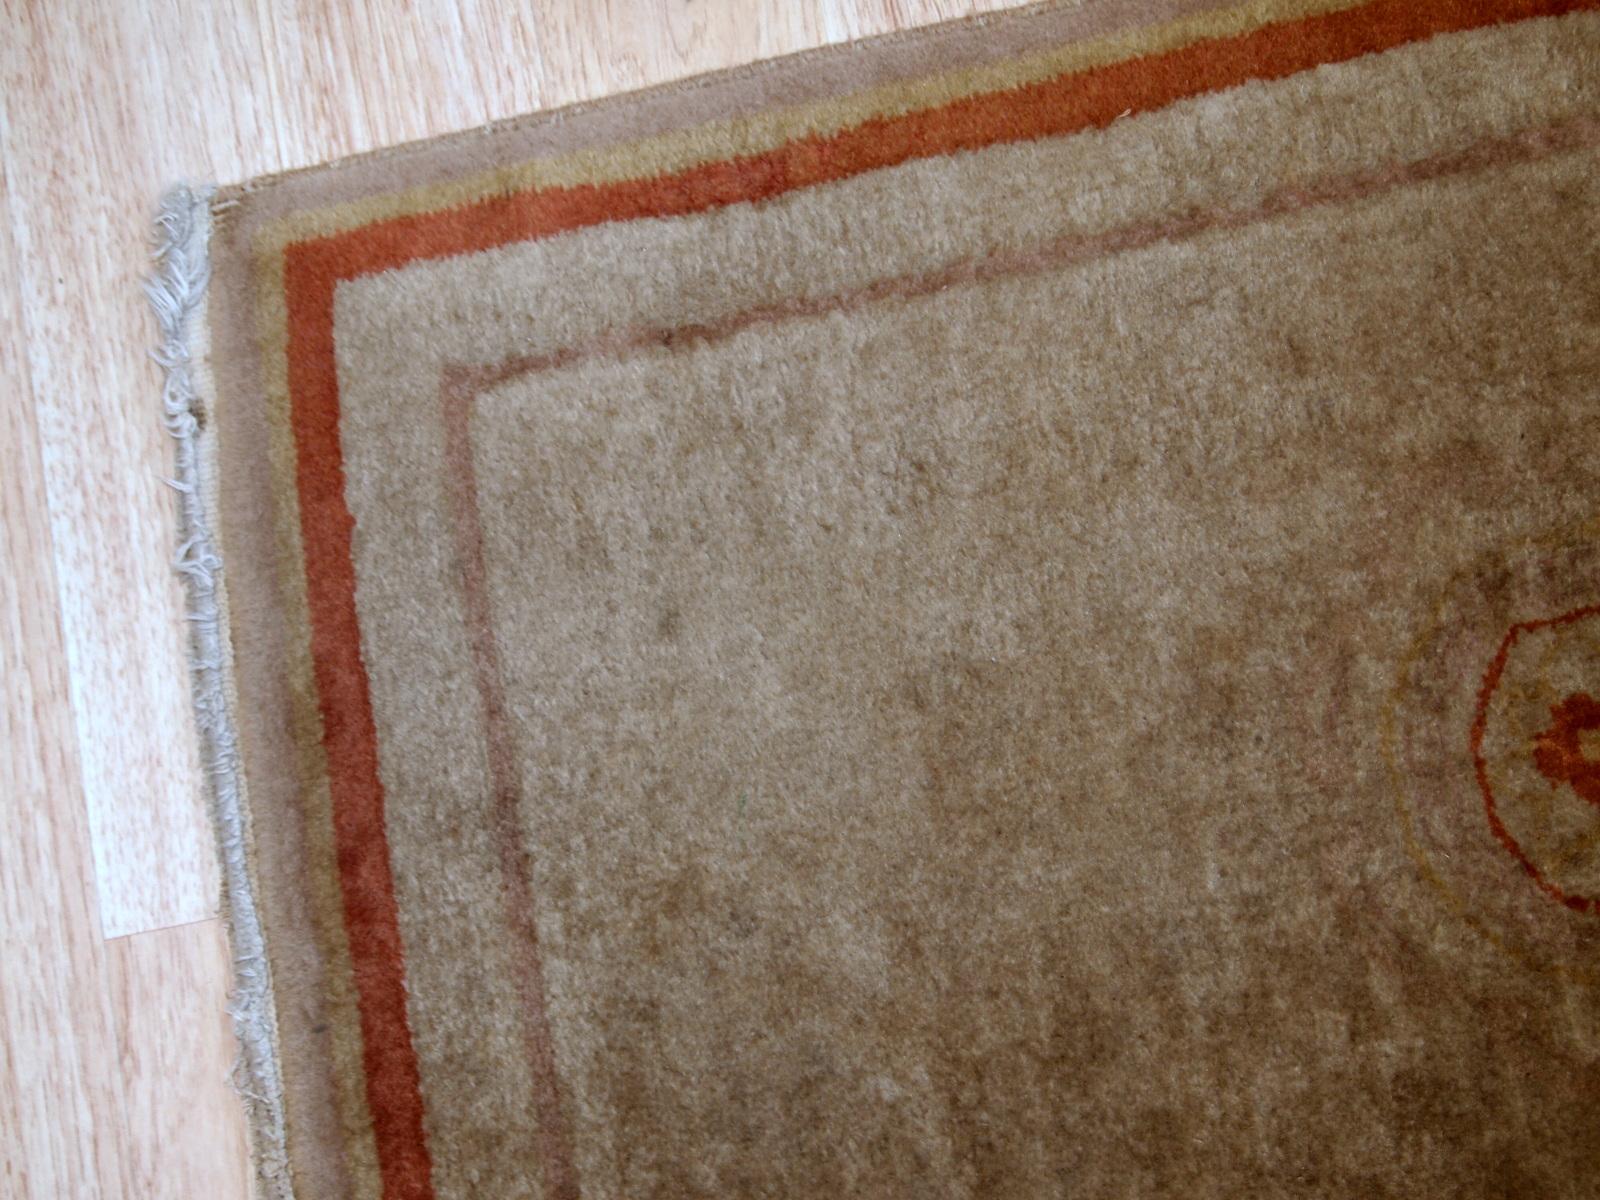 Handgefertigter Vintage-Teppich aus China in beiger Wolle. Der Teppich stammt aus dem Ende des 20. Jahrhunderts und ist in gutem Originalzustand.

- Zustand: original gut,

- ca. 1970er Jahre,

- Größe: 2,1' x 3,2' (64cm x 97cm),

-